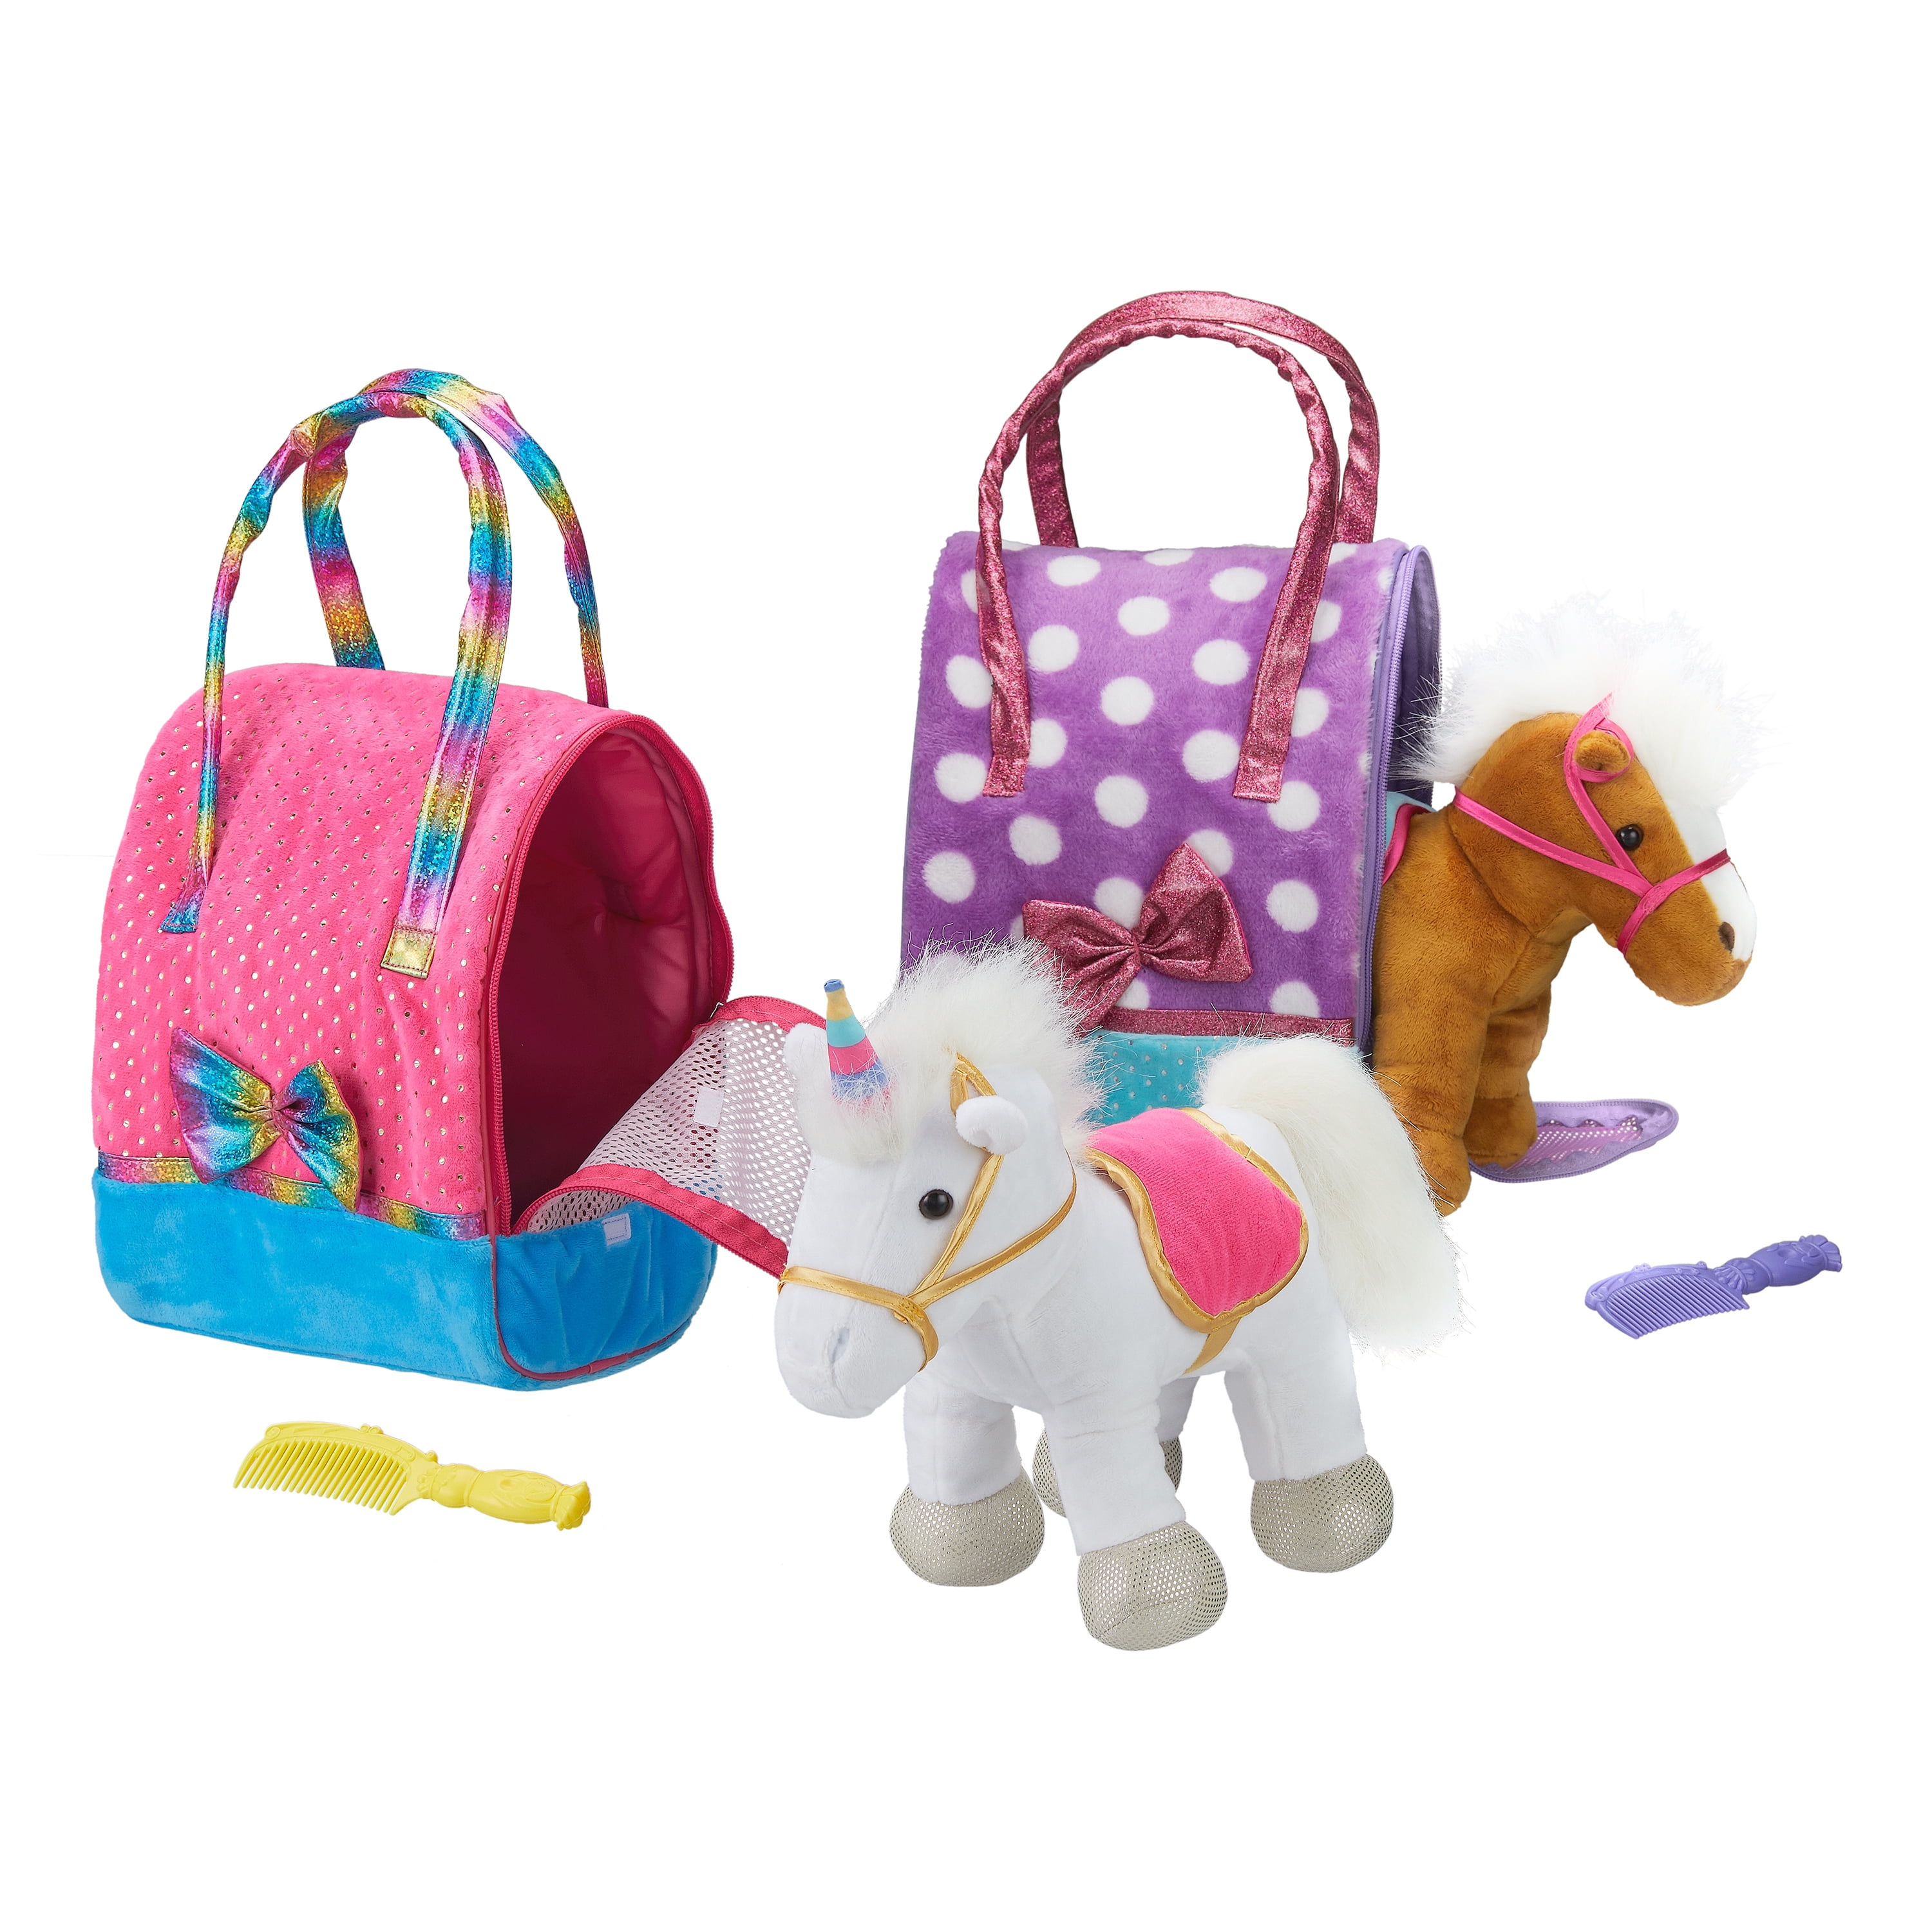 stuffed animal horses Stuffed horse stuffed toy pony plushie